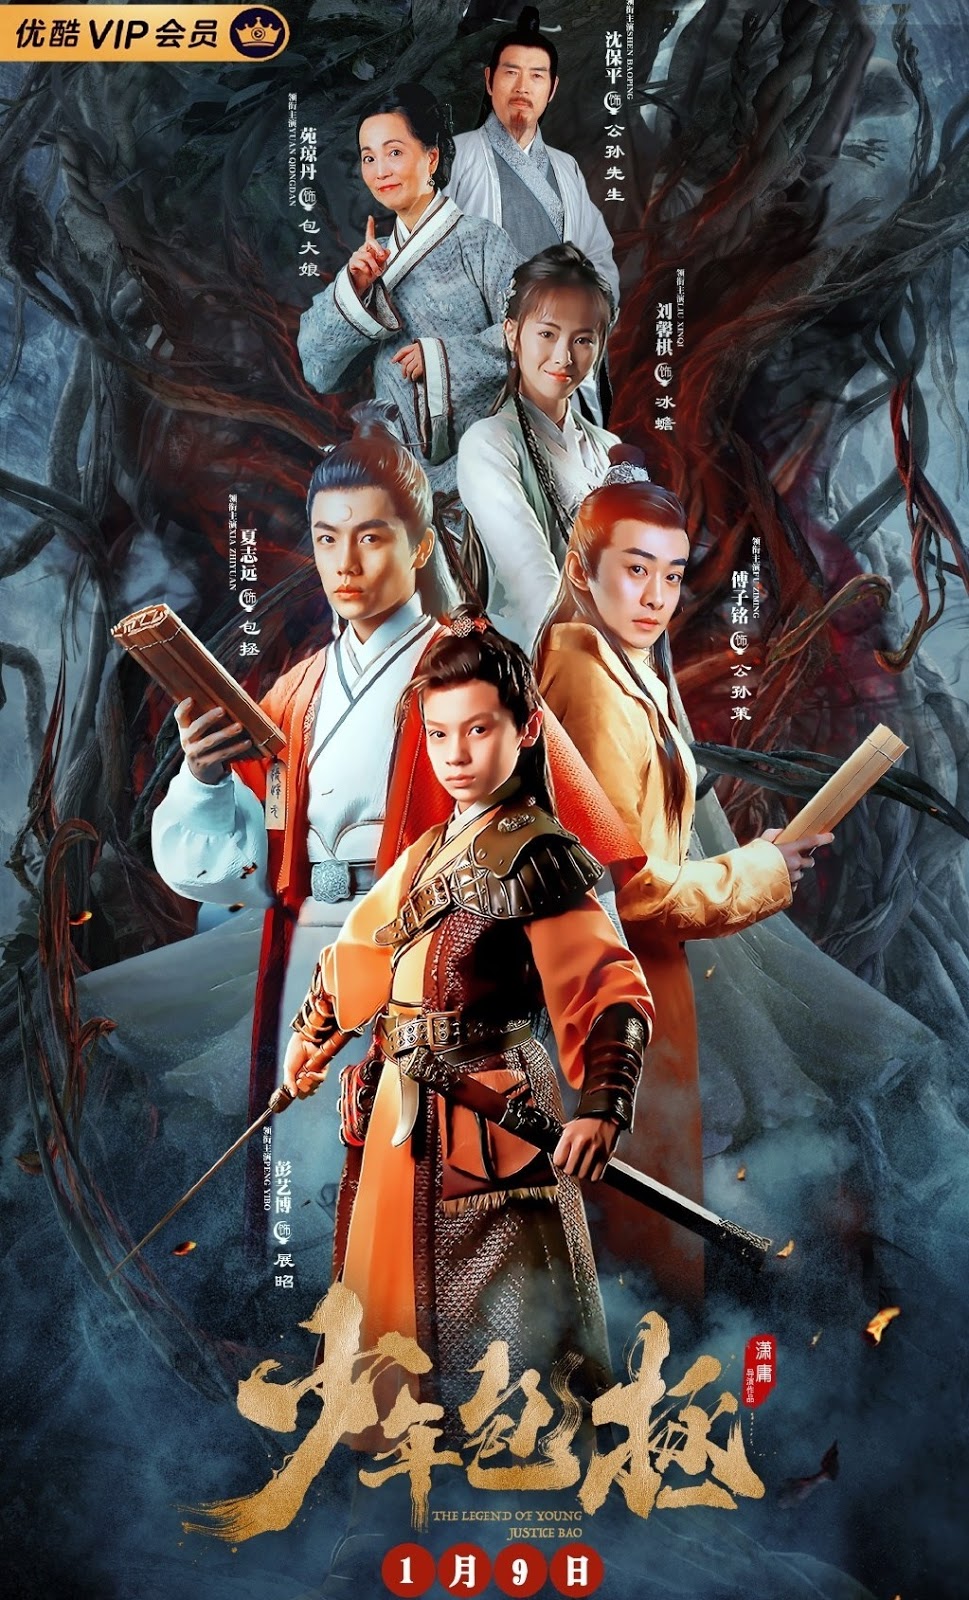 Xem Phim Thiếu Niên Bao Chửng (The Legend of Young Justice Bao)